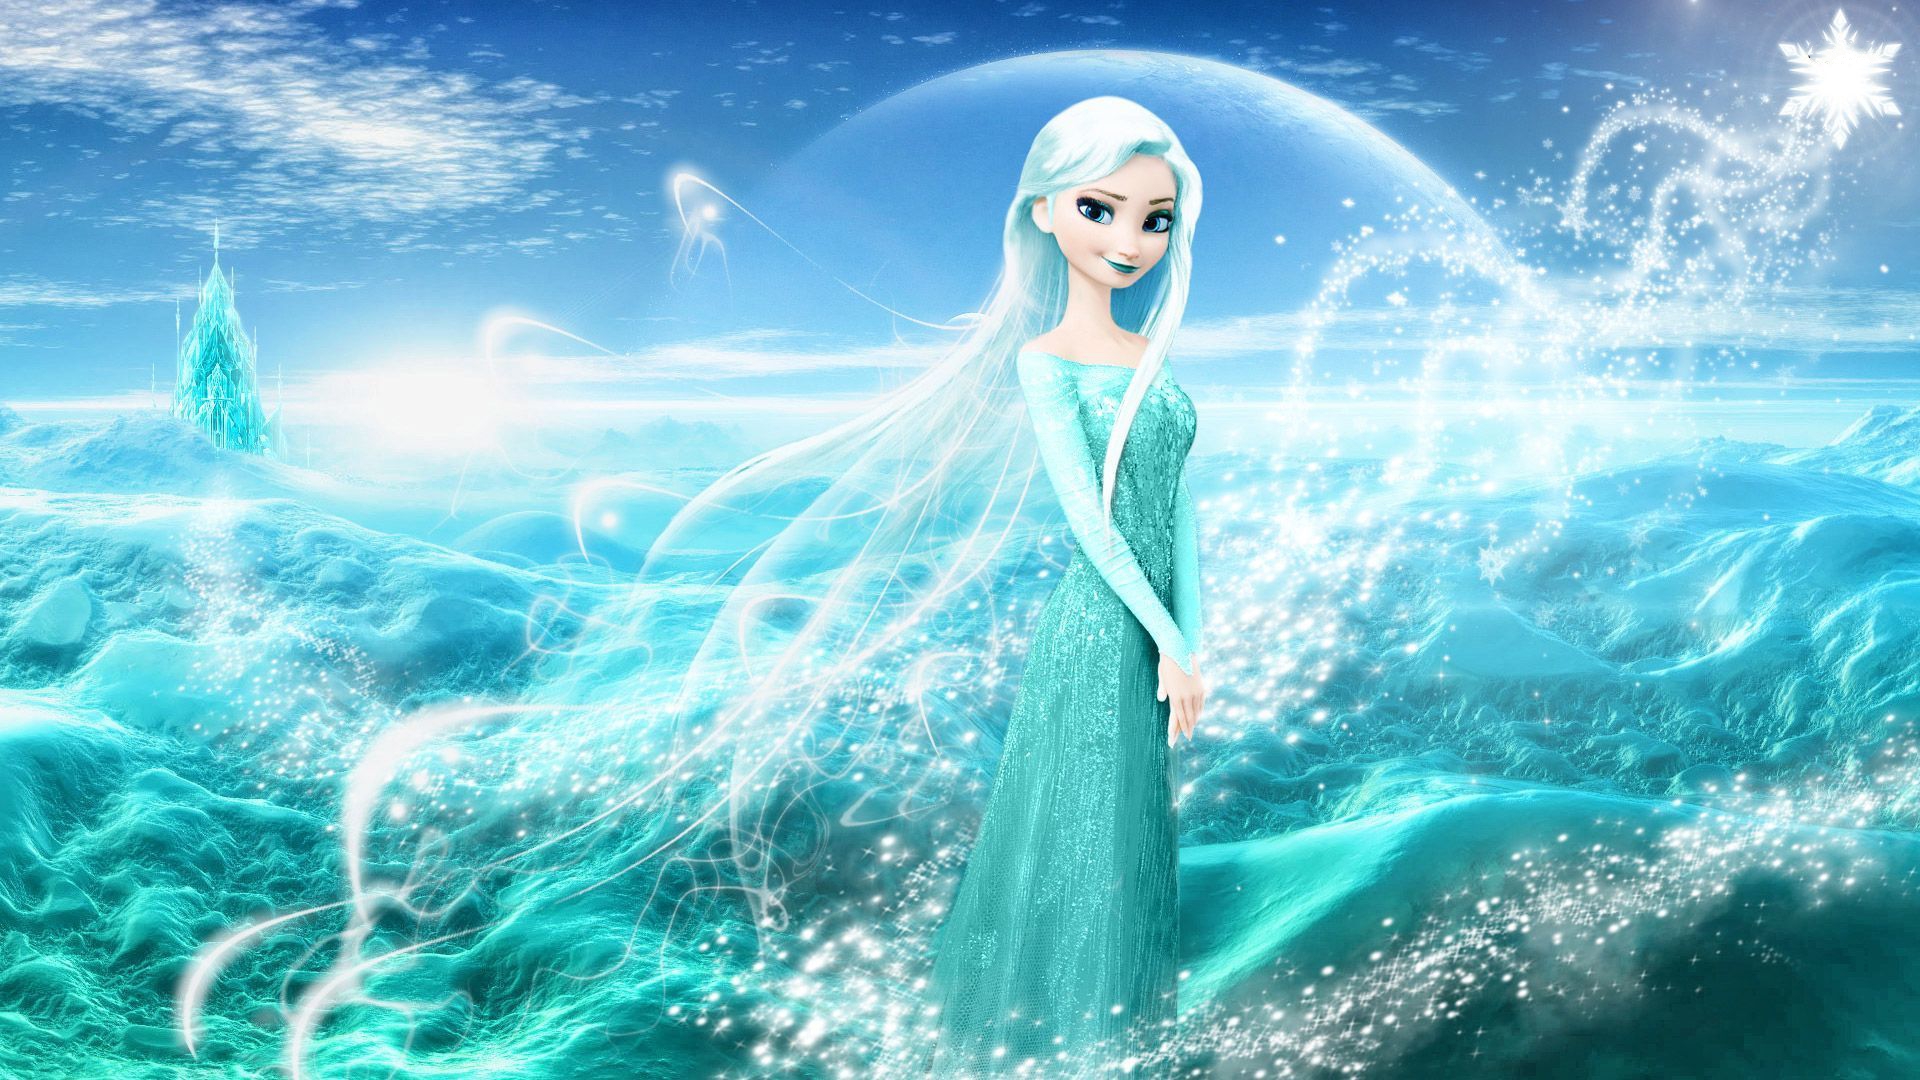 Tải xuống APK Wallpaper Frozen Elsa  Anna cho Android